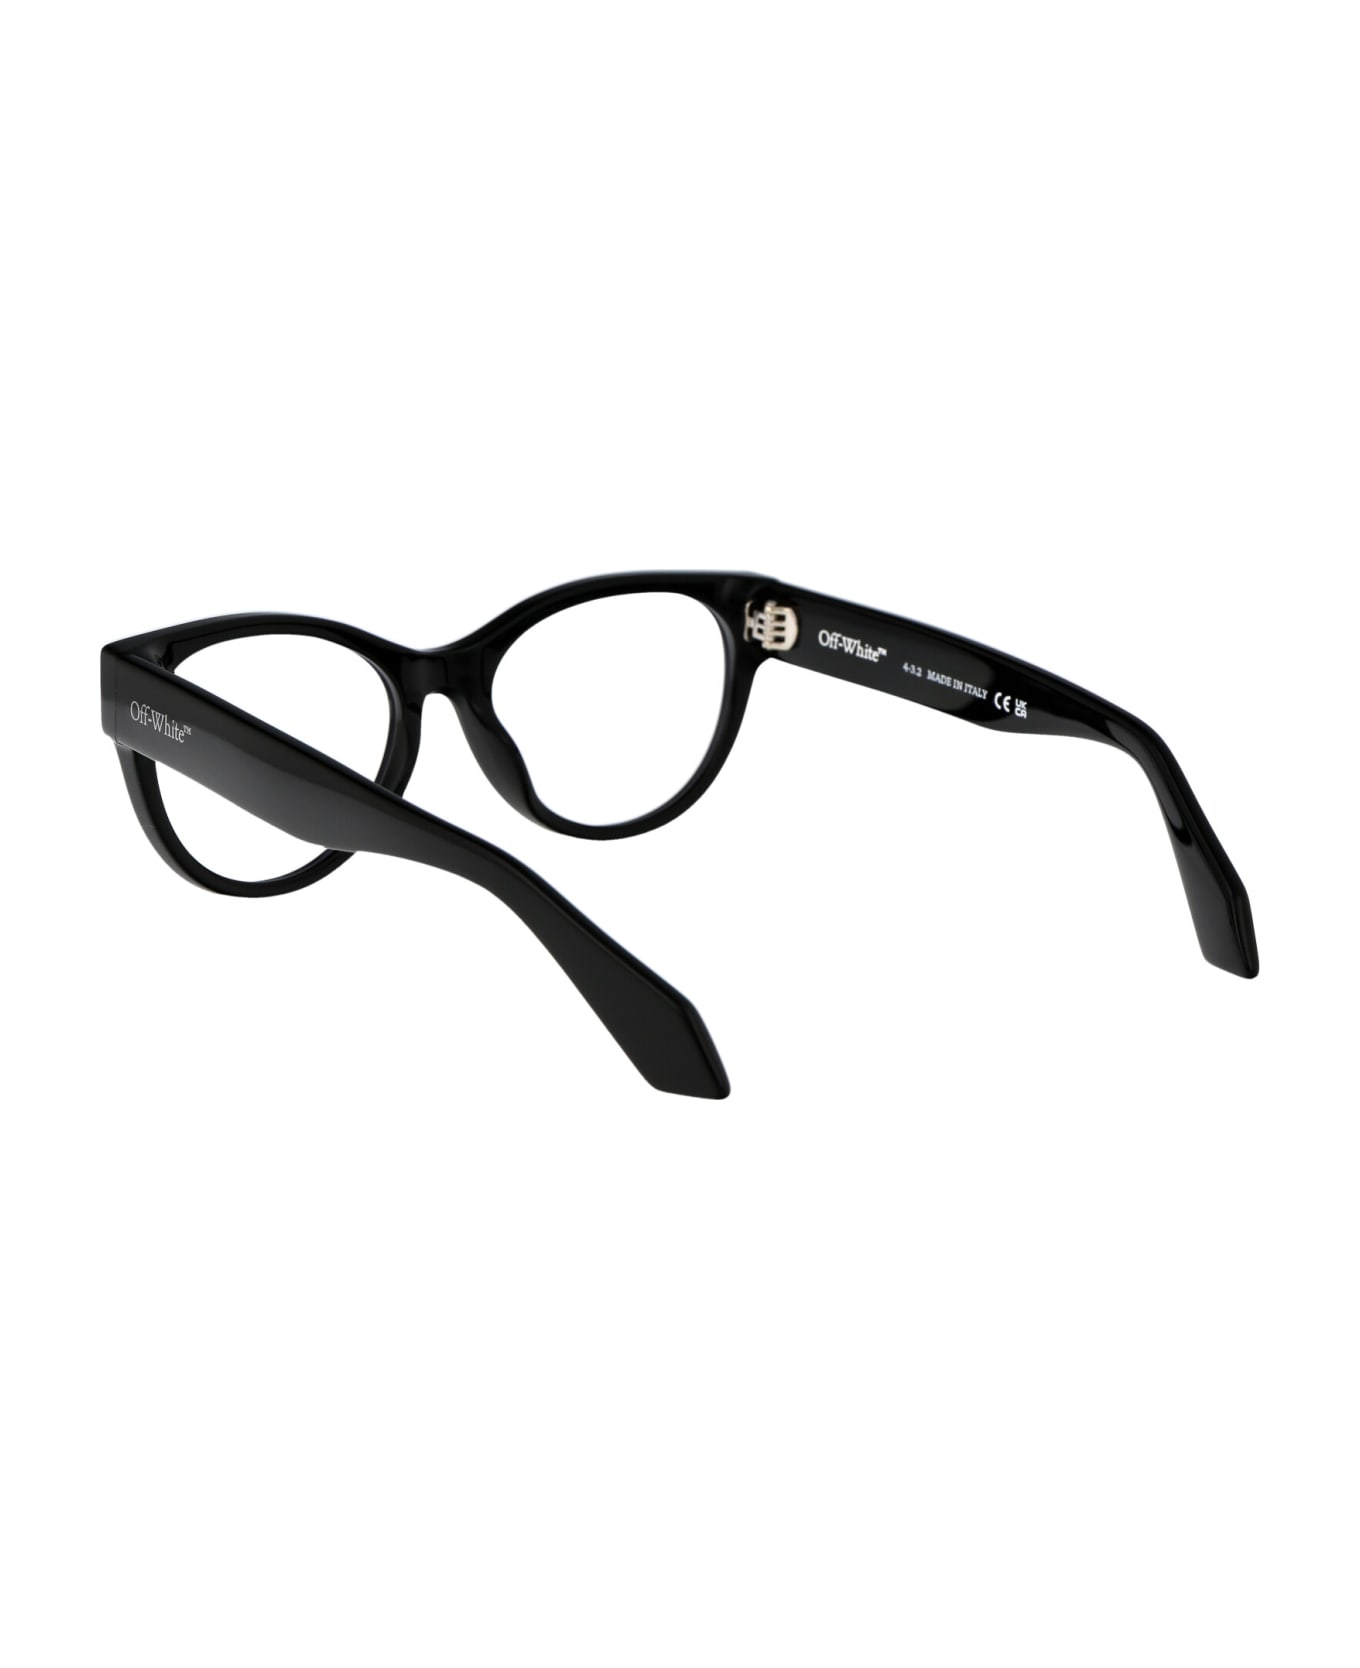 Off-White Optical Style 57 Glasses - 1000 BLACK アイウェア